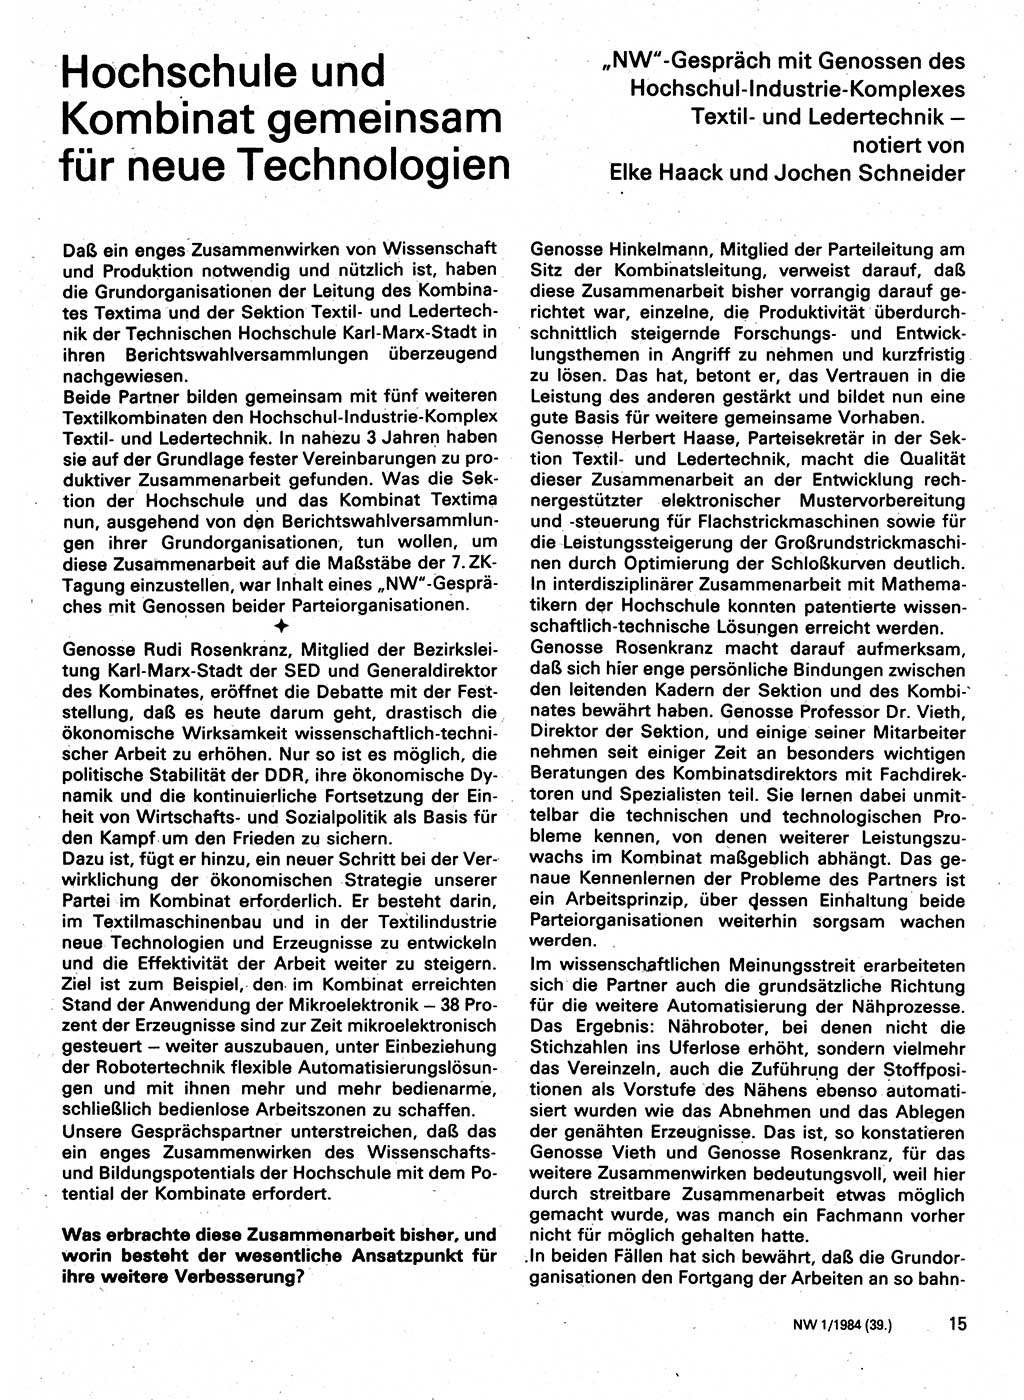 Neuer Weg (NW), Organ des Zentralkomitees (ZK) der SED (Sozialistische Einheitspartei Deutschlands) für Fragen des Parteilebens, 39. Jahrgang [Deutsche Demokratische Republik (DDR)] 1984, Seite 15 (NW ZK SED DDR 1984, S. 15)